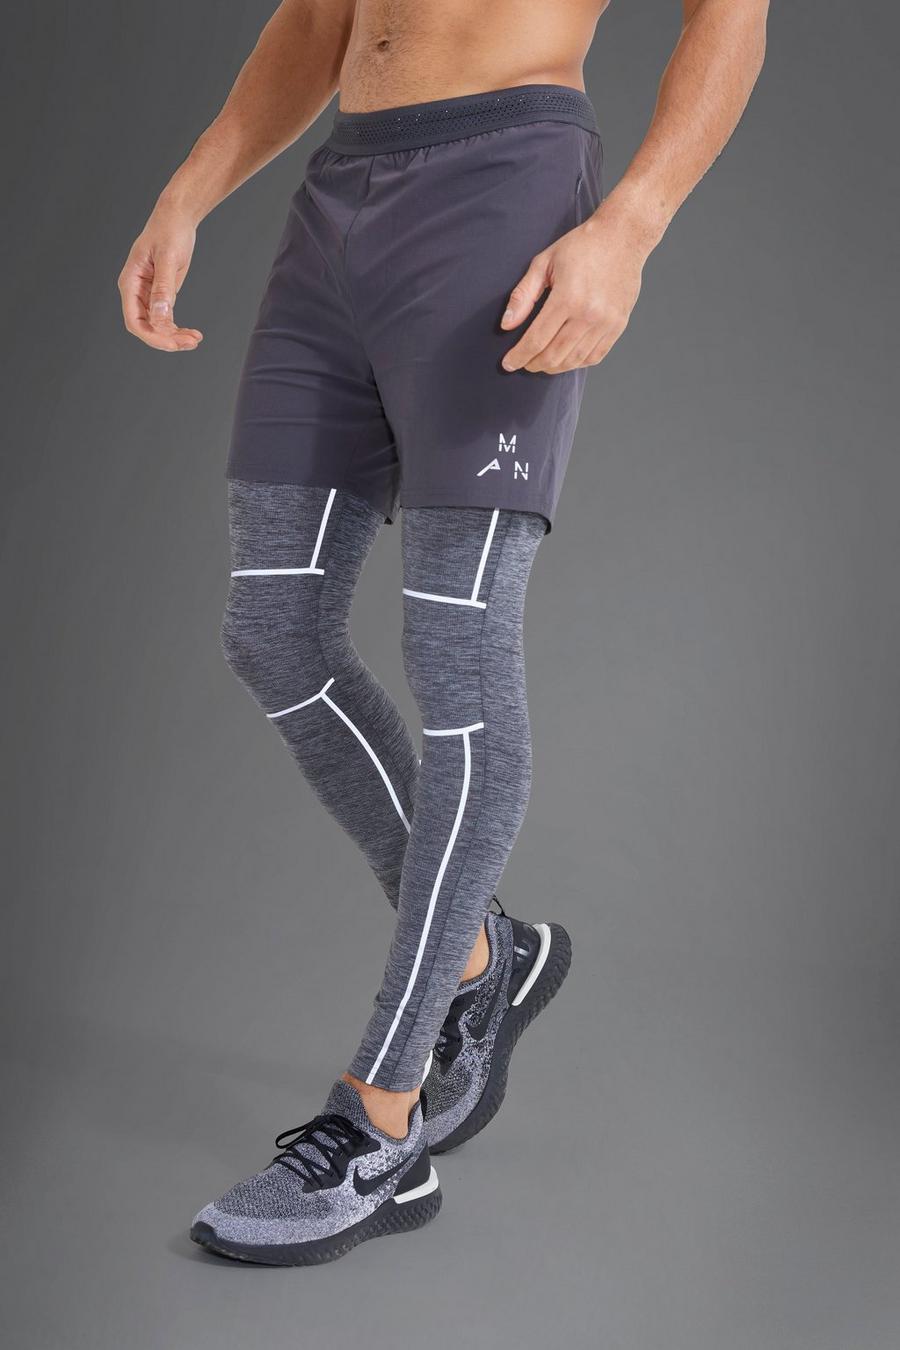 Short et leggin de sport 2 en 1 réfléchissant - MAN Active, Charcoal grey